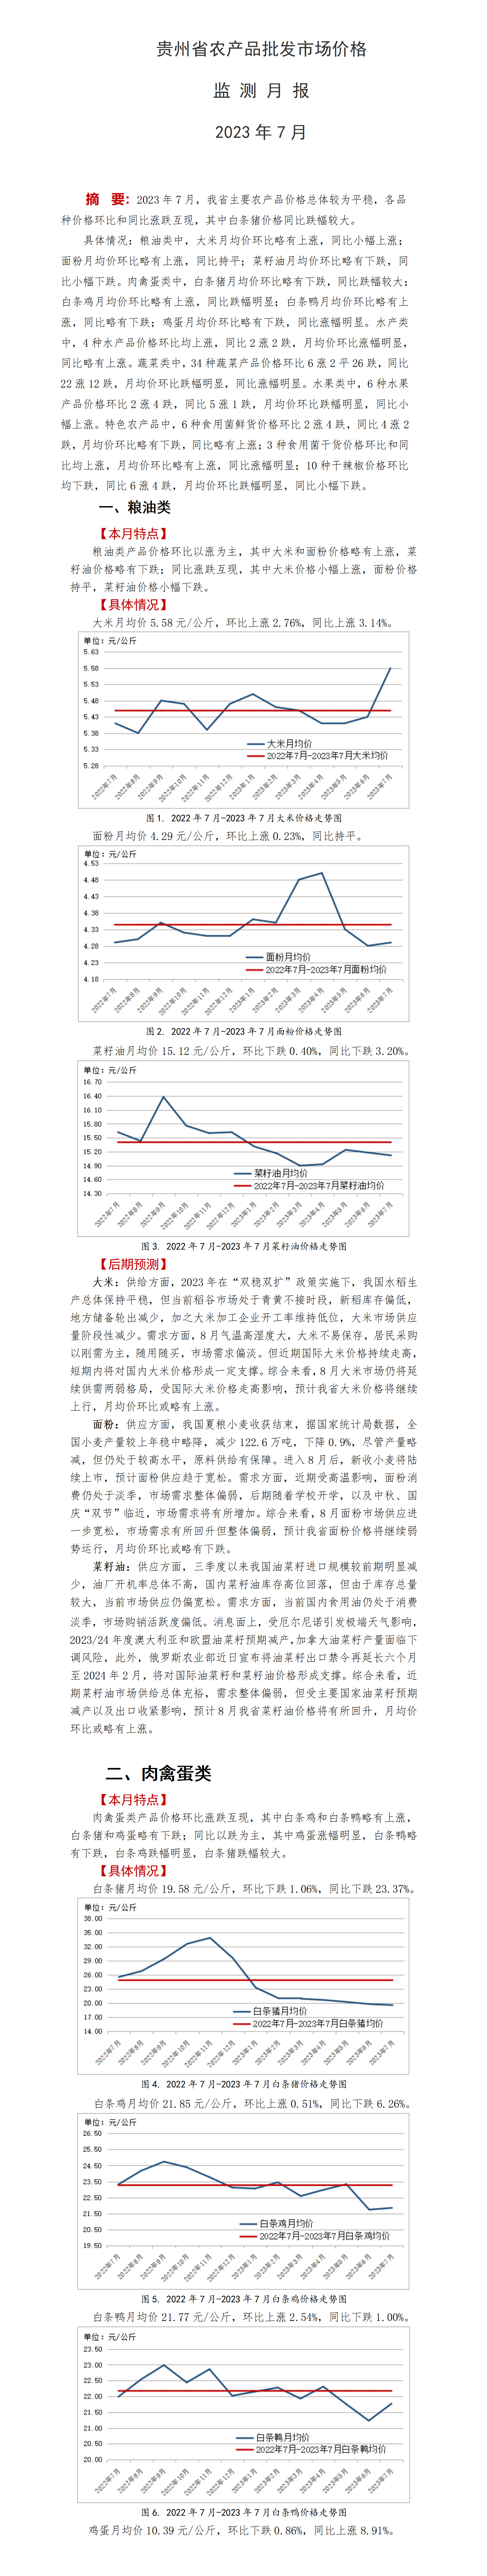 2023年7月-贵州省农产品批发市场价格监测月报-定_01